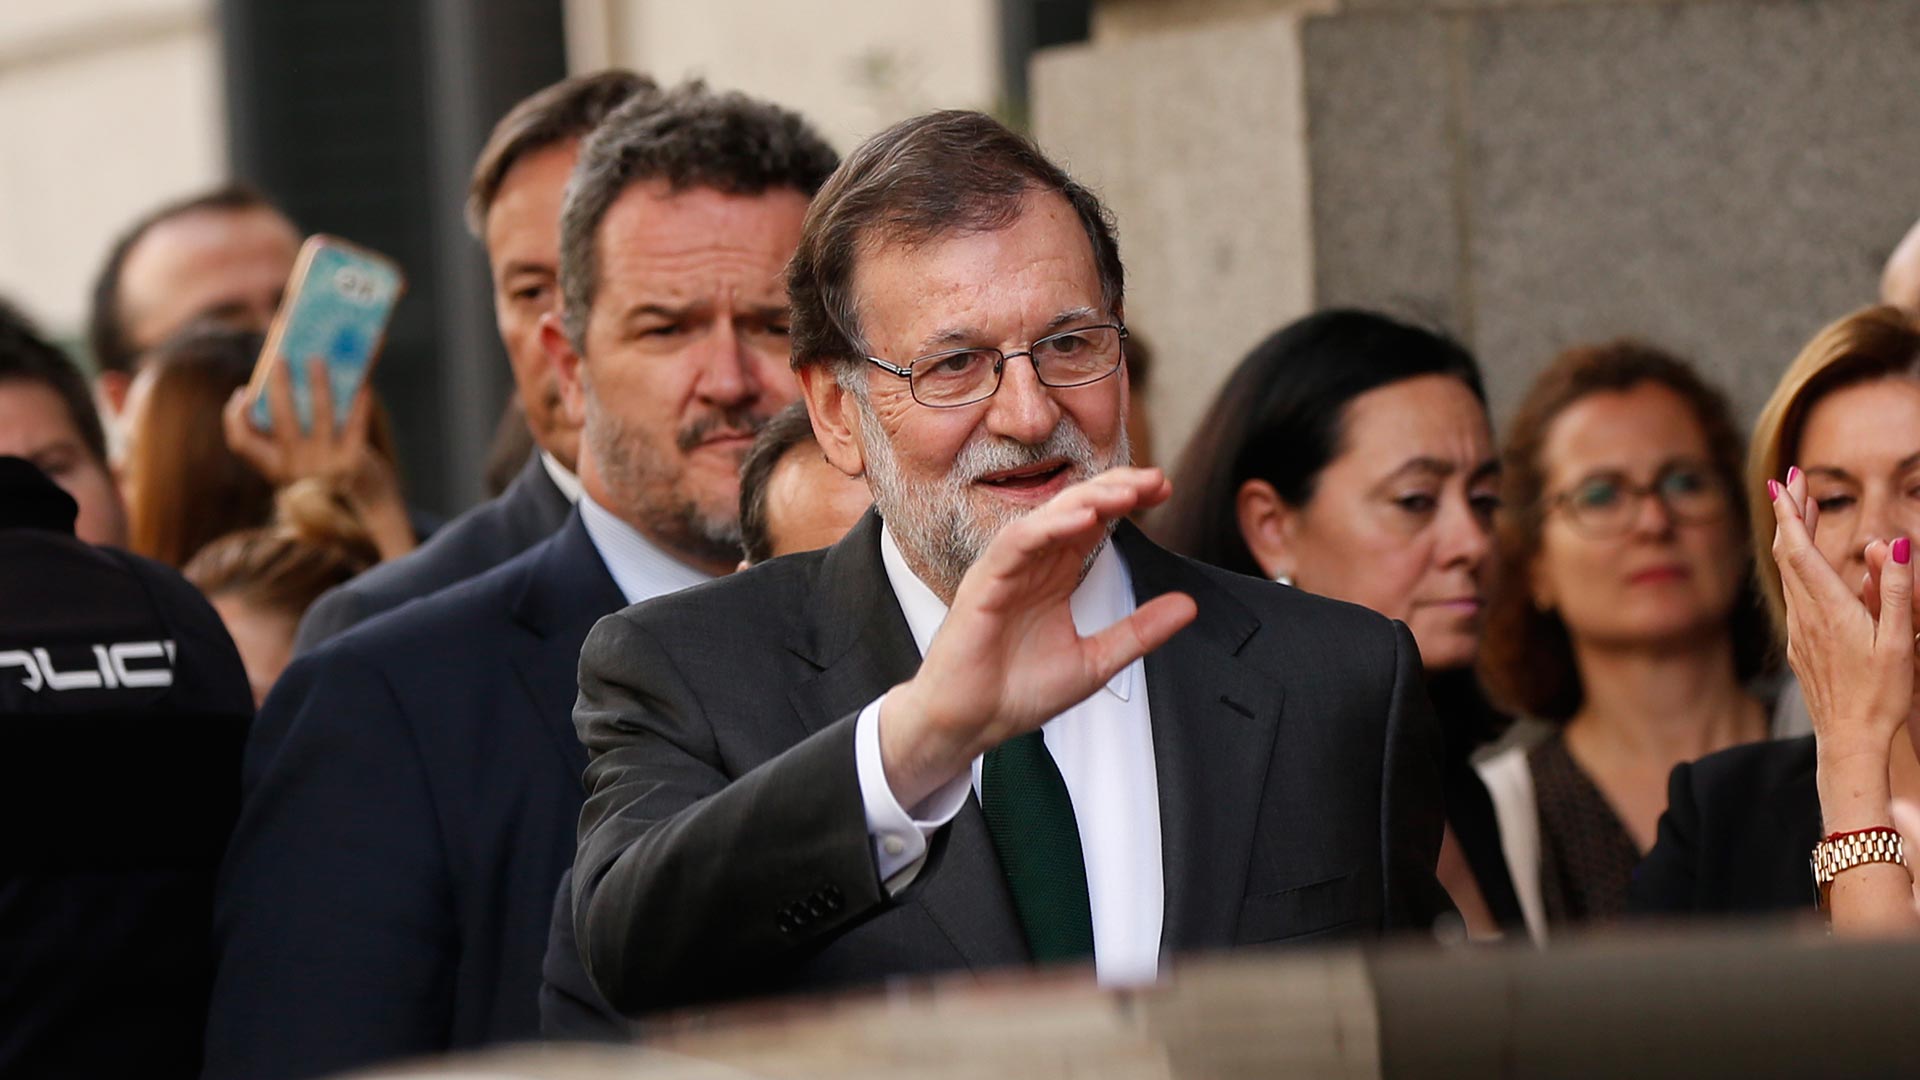 El Albondiguilla implica en el caso Bárcenas a Rajoy y al candidato del PP a las elecciones andaluzas